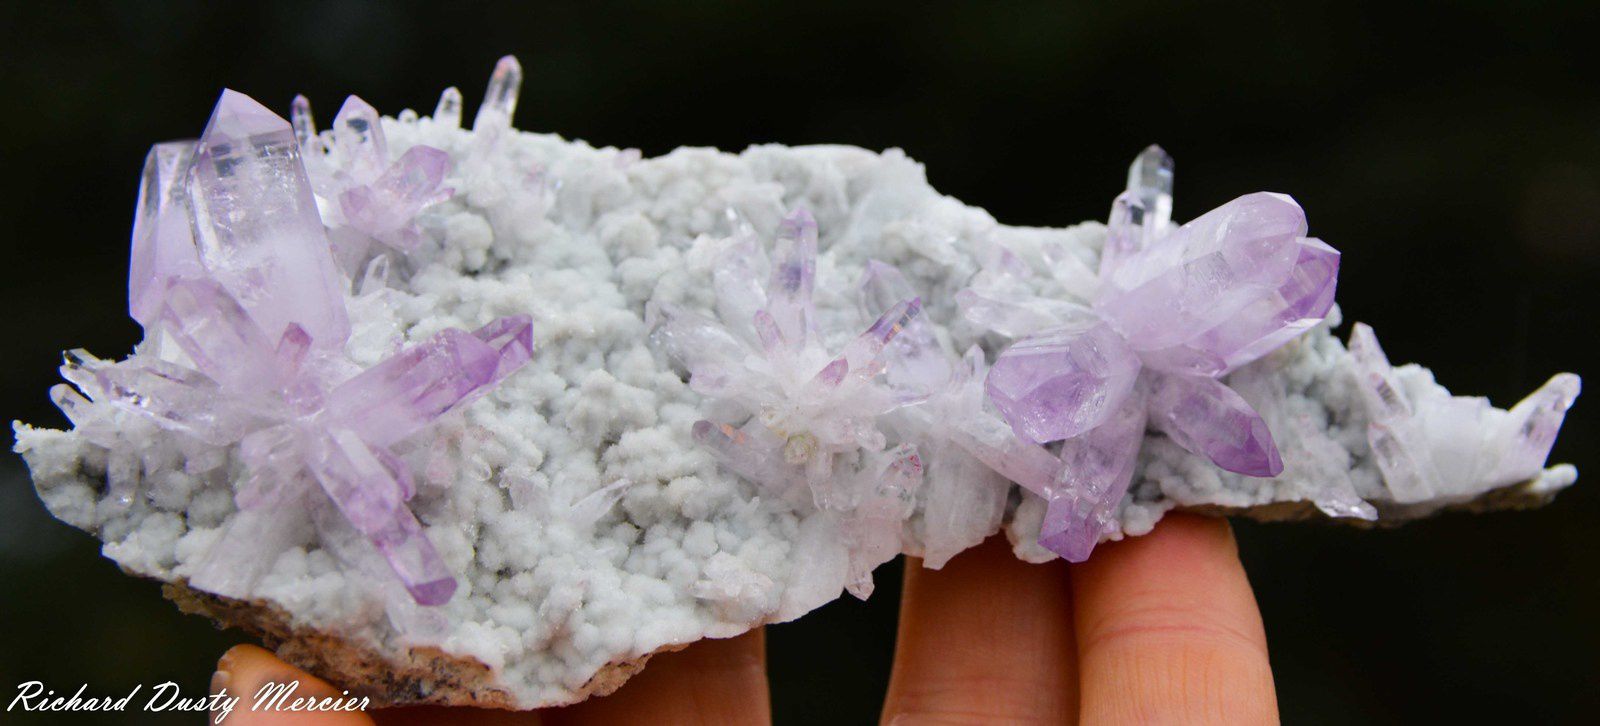 Amethyst from Veracruz, Mexico